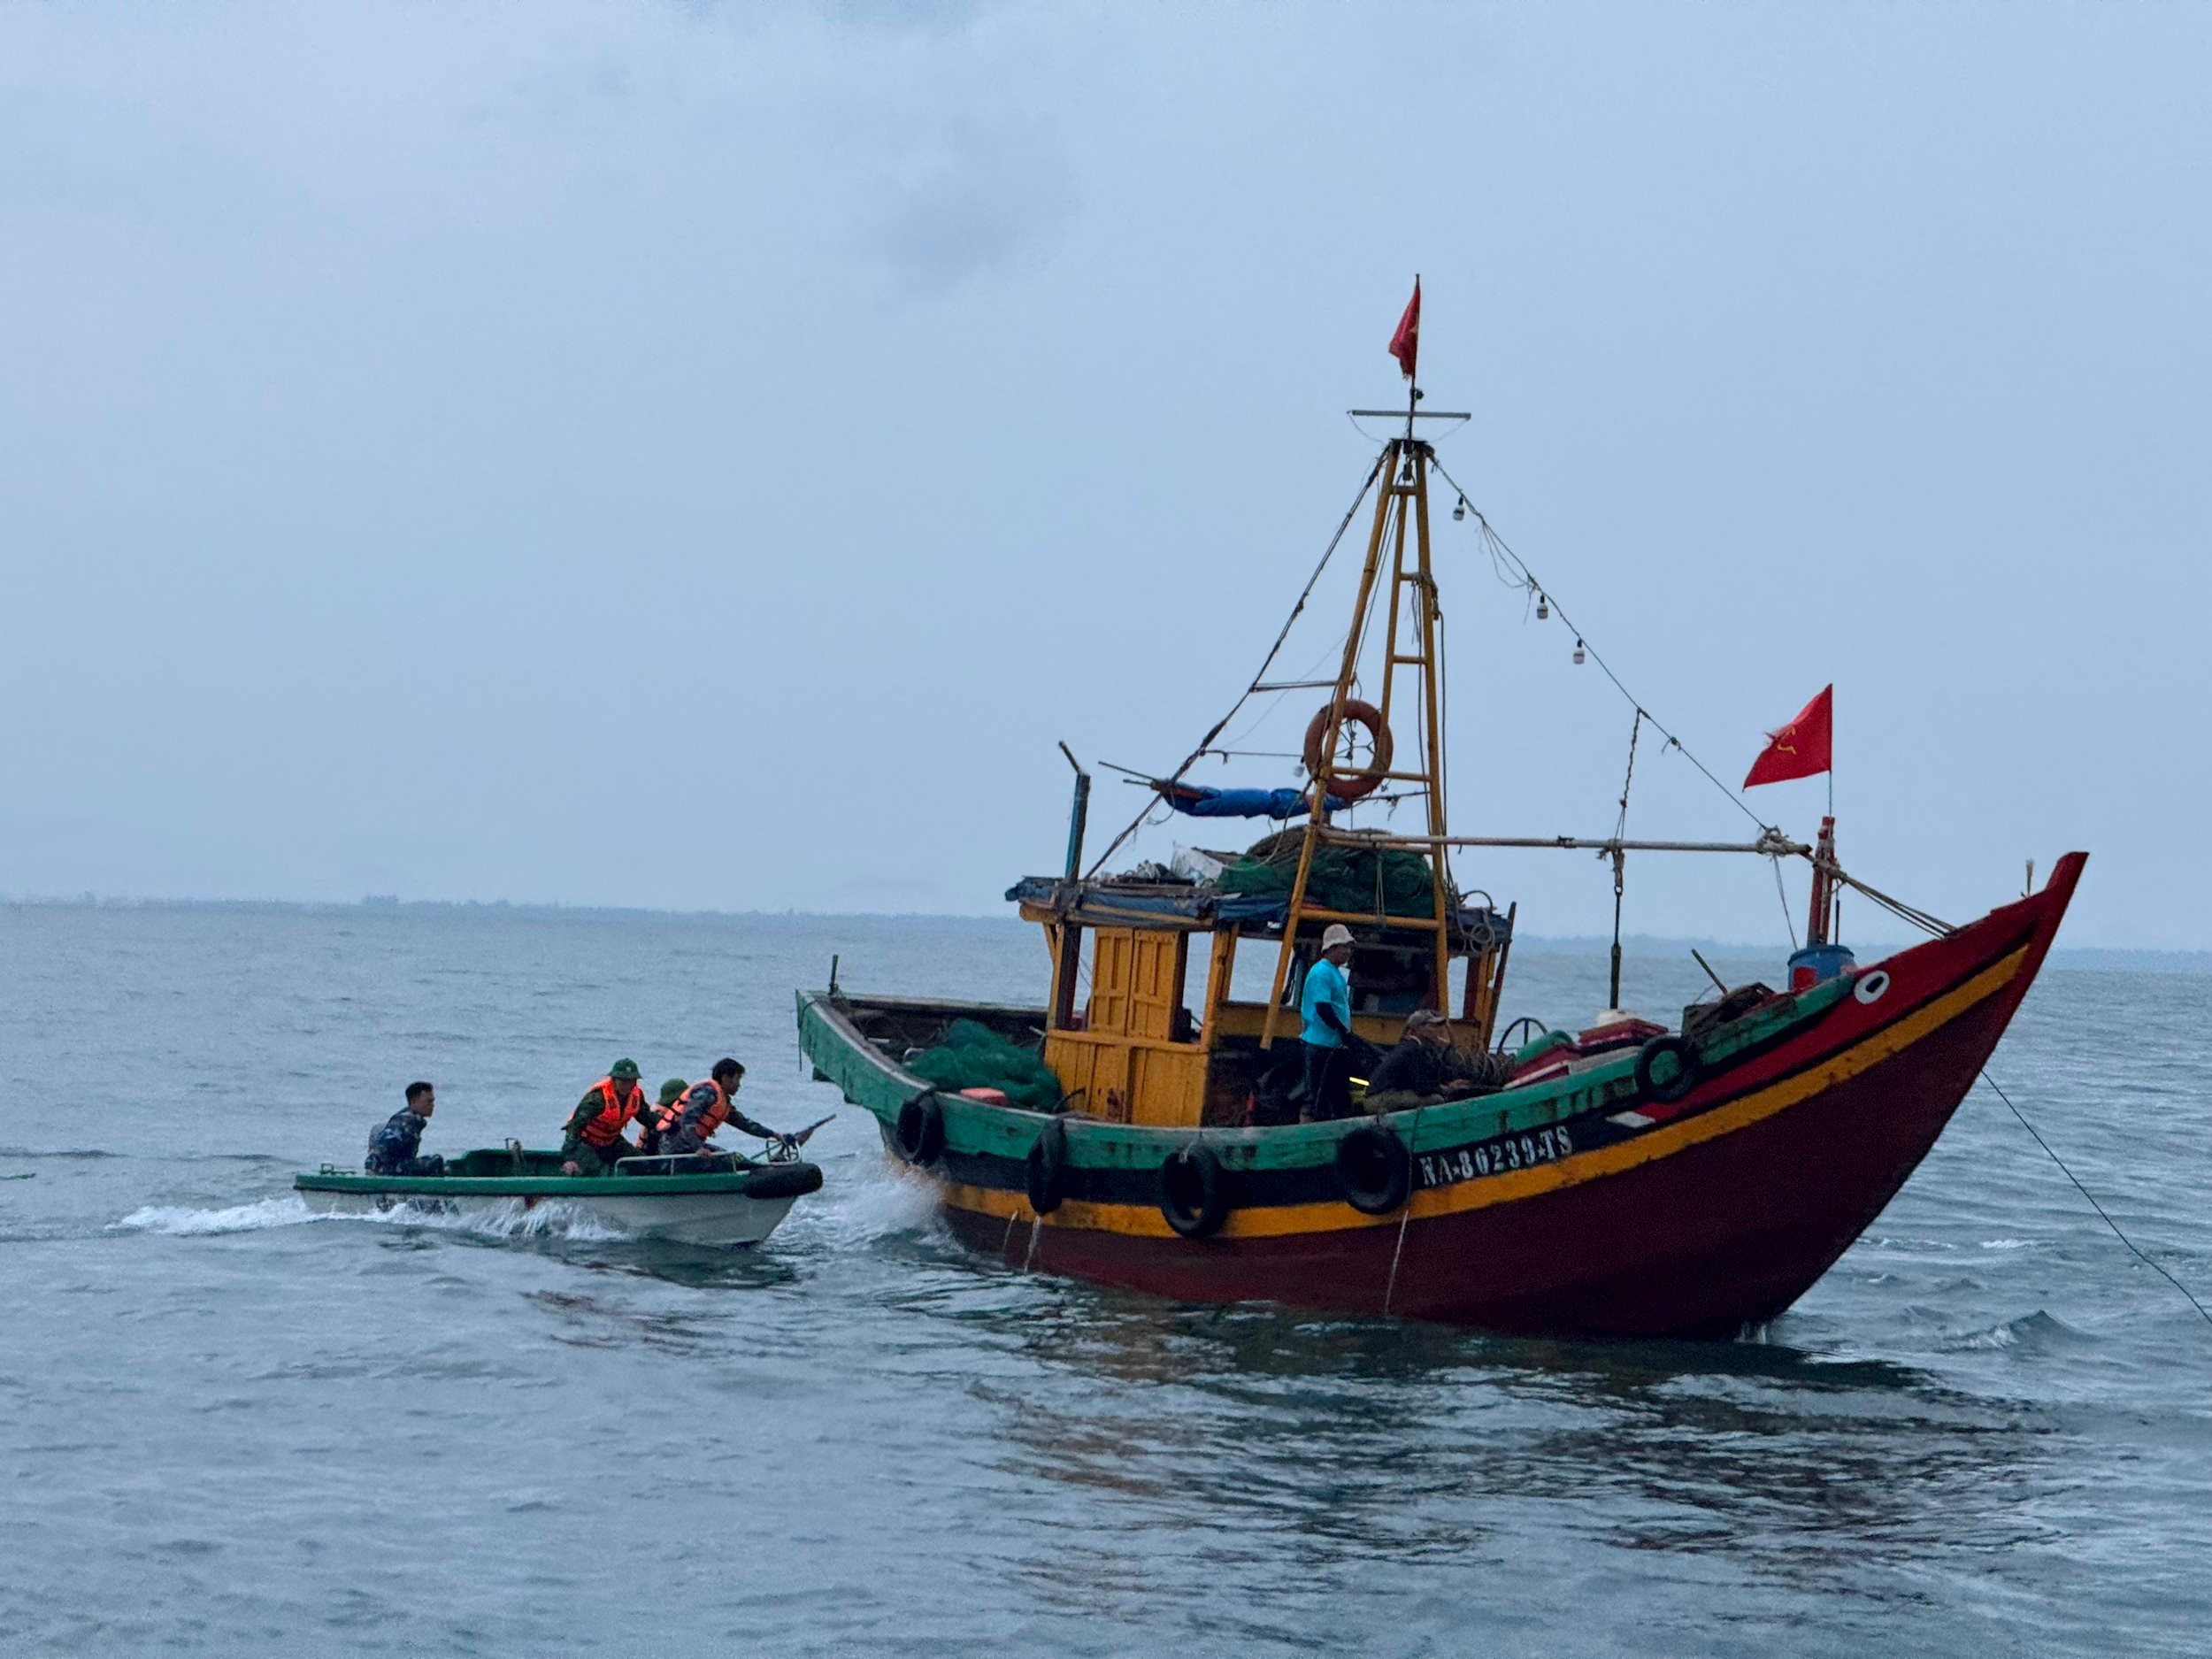 Tiếp cận tàu cá đang đánh giã cào để kiểm tra hành chính. Ảnh Nguyễn Hải